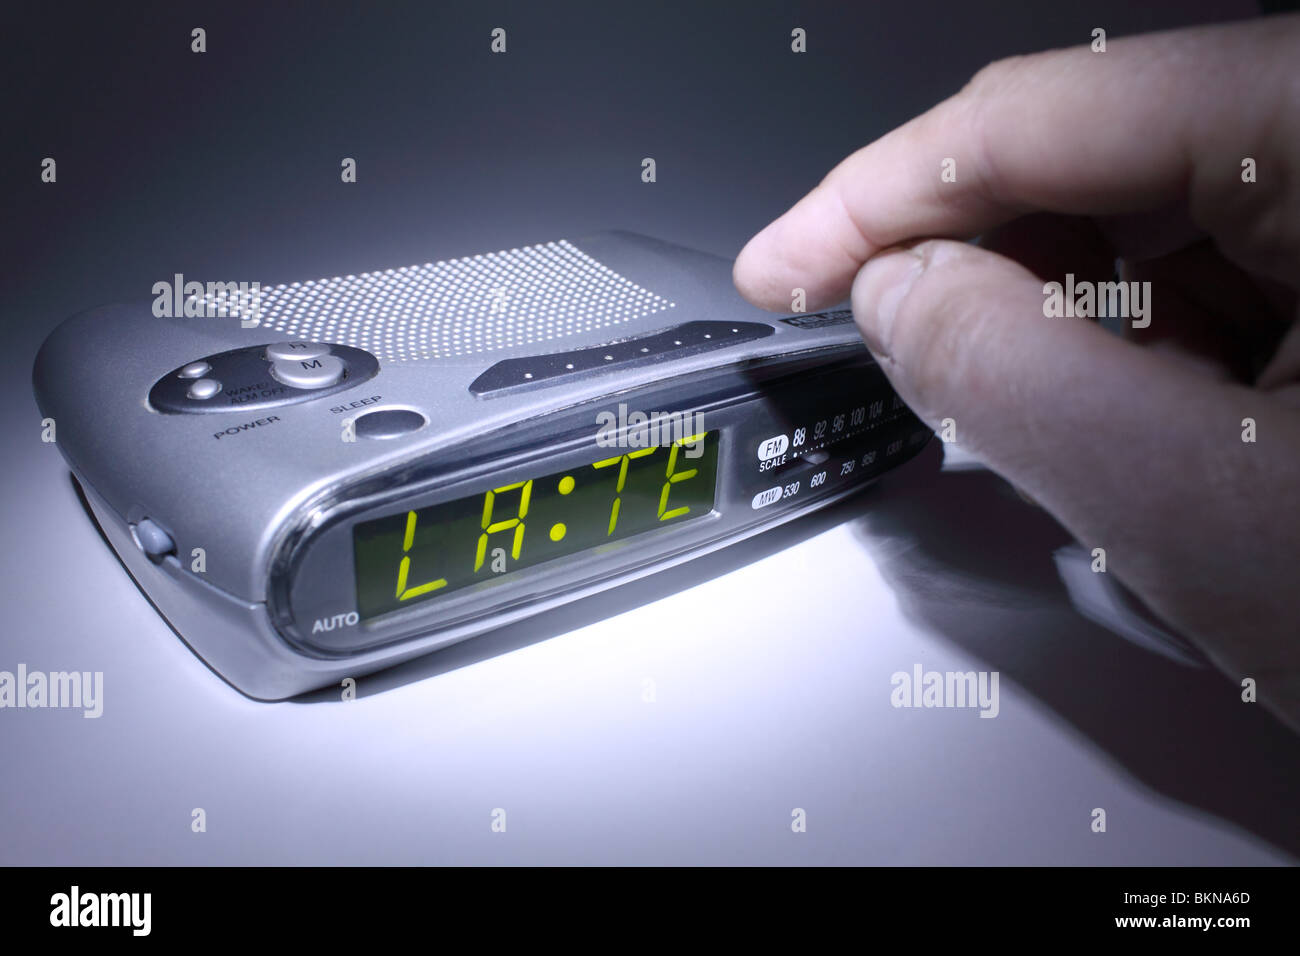 Cortar un reloj de alarma electrónica indicando "tarde" en la pantalla digital Foto de stock